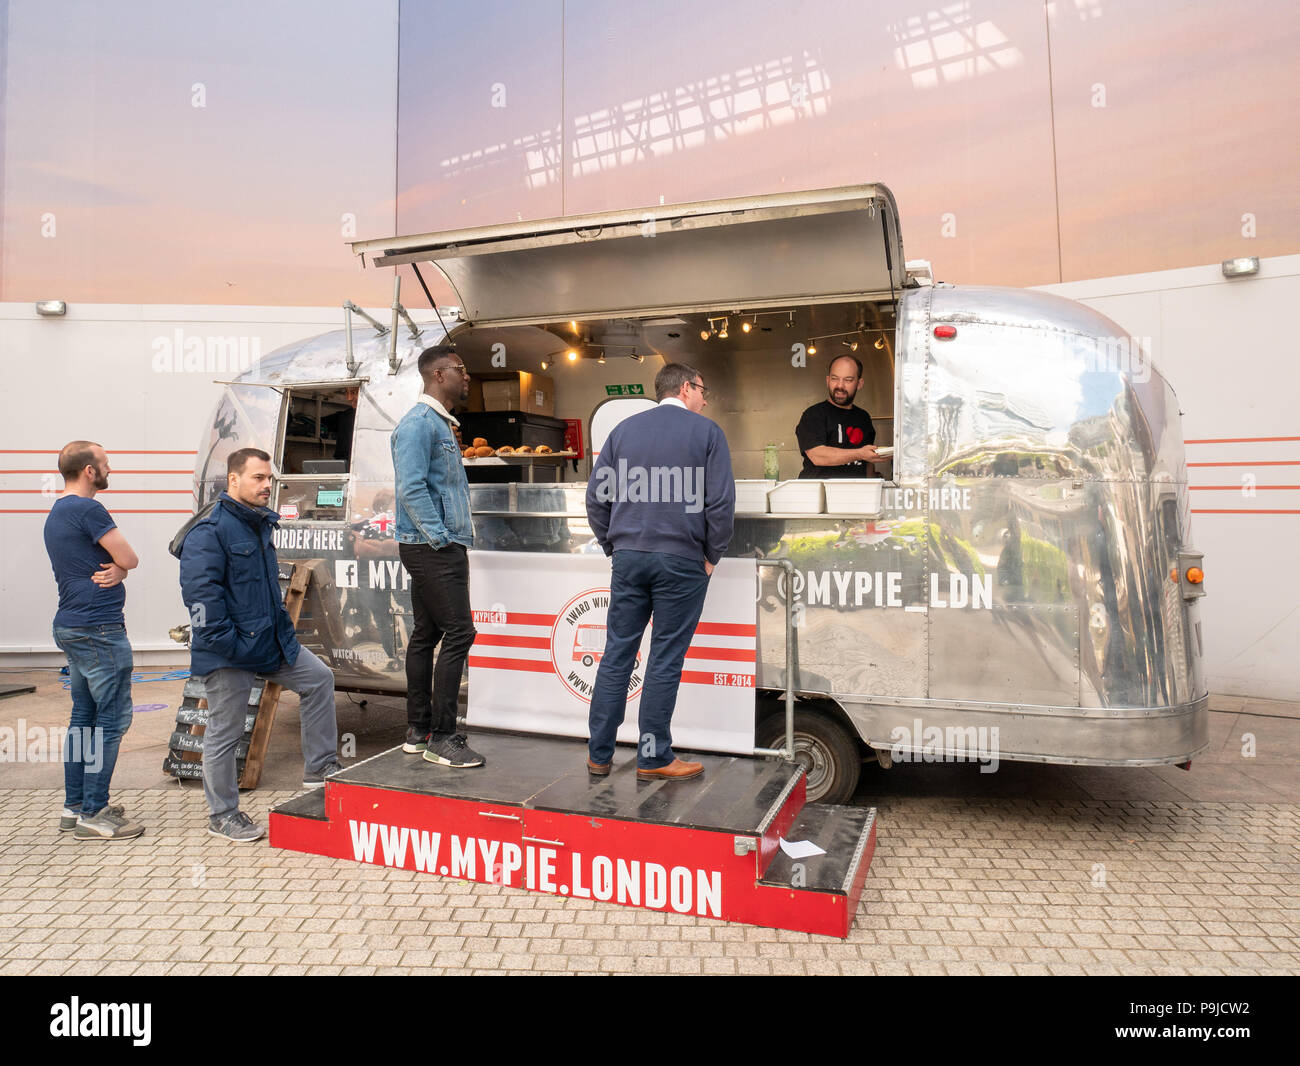 Pop-up van servant des repas à emporter dans la région de Broadgate Circle, Ville de London, UK Banque D'Images